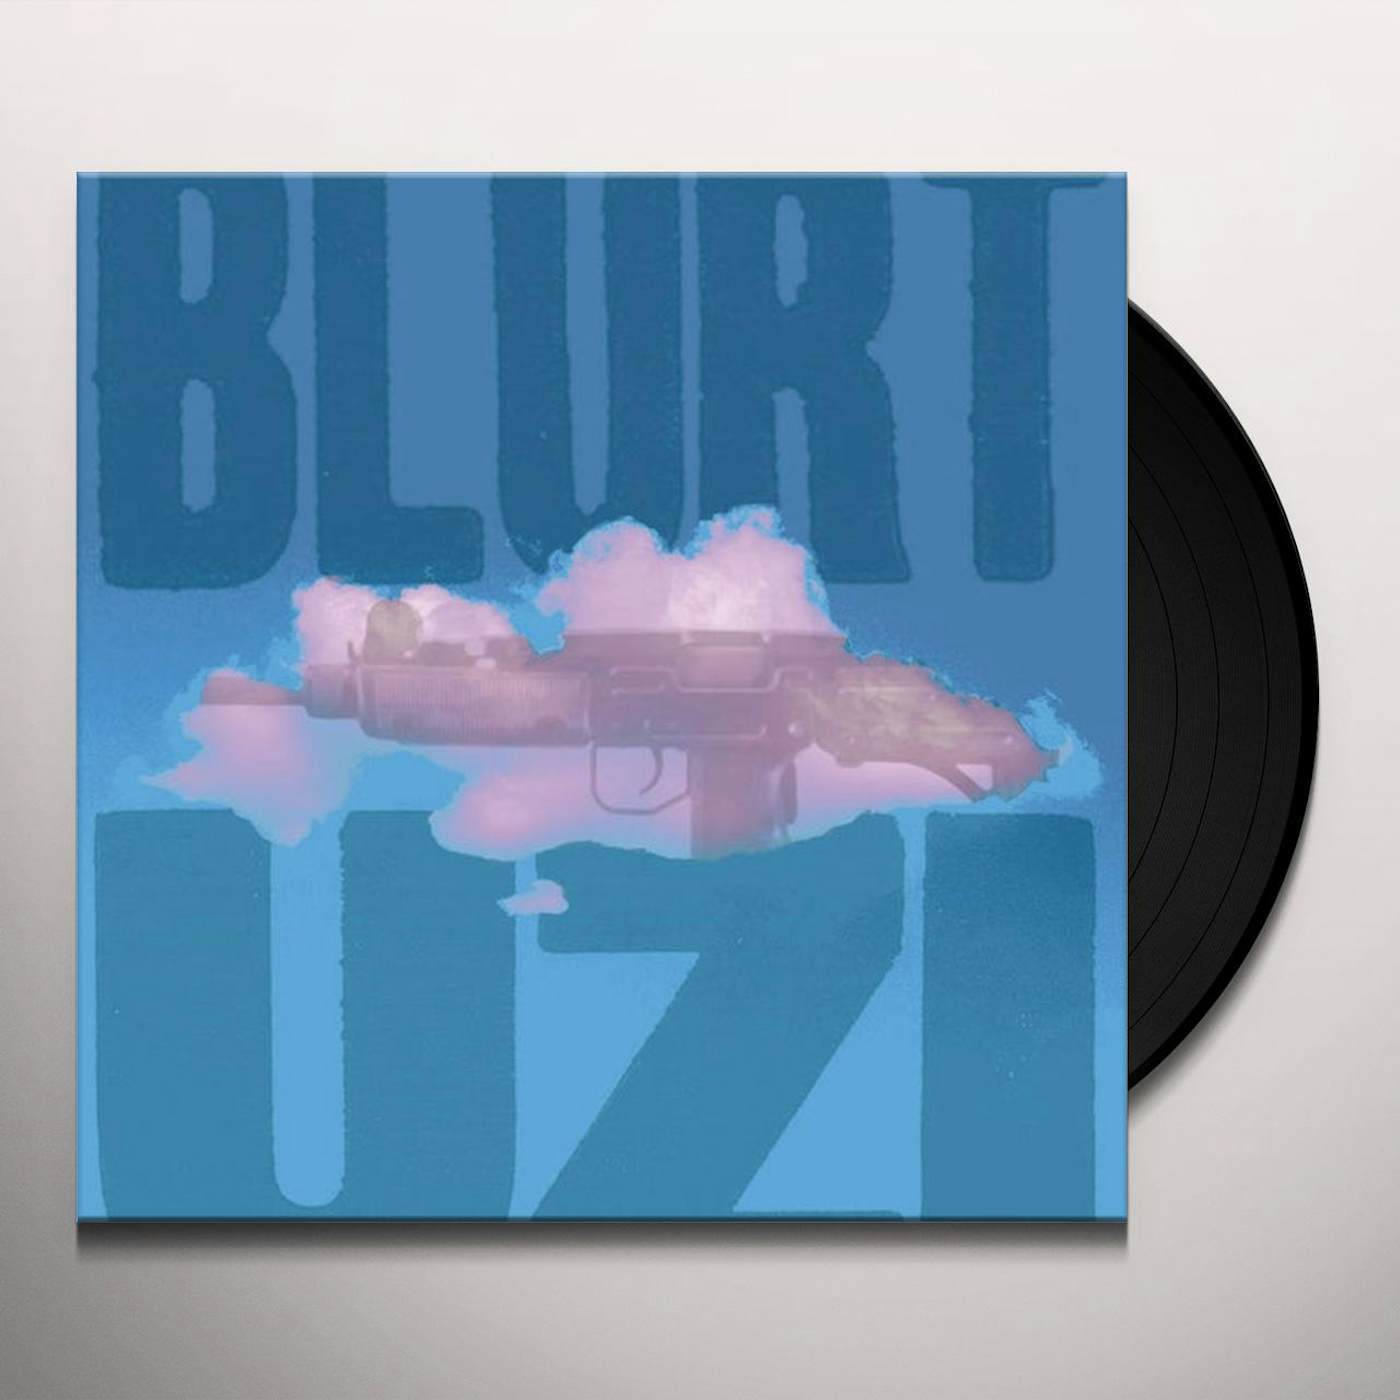 Blurt UZI Vinyl Record